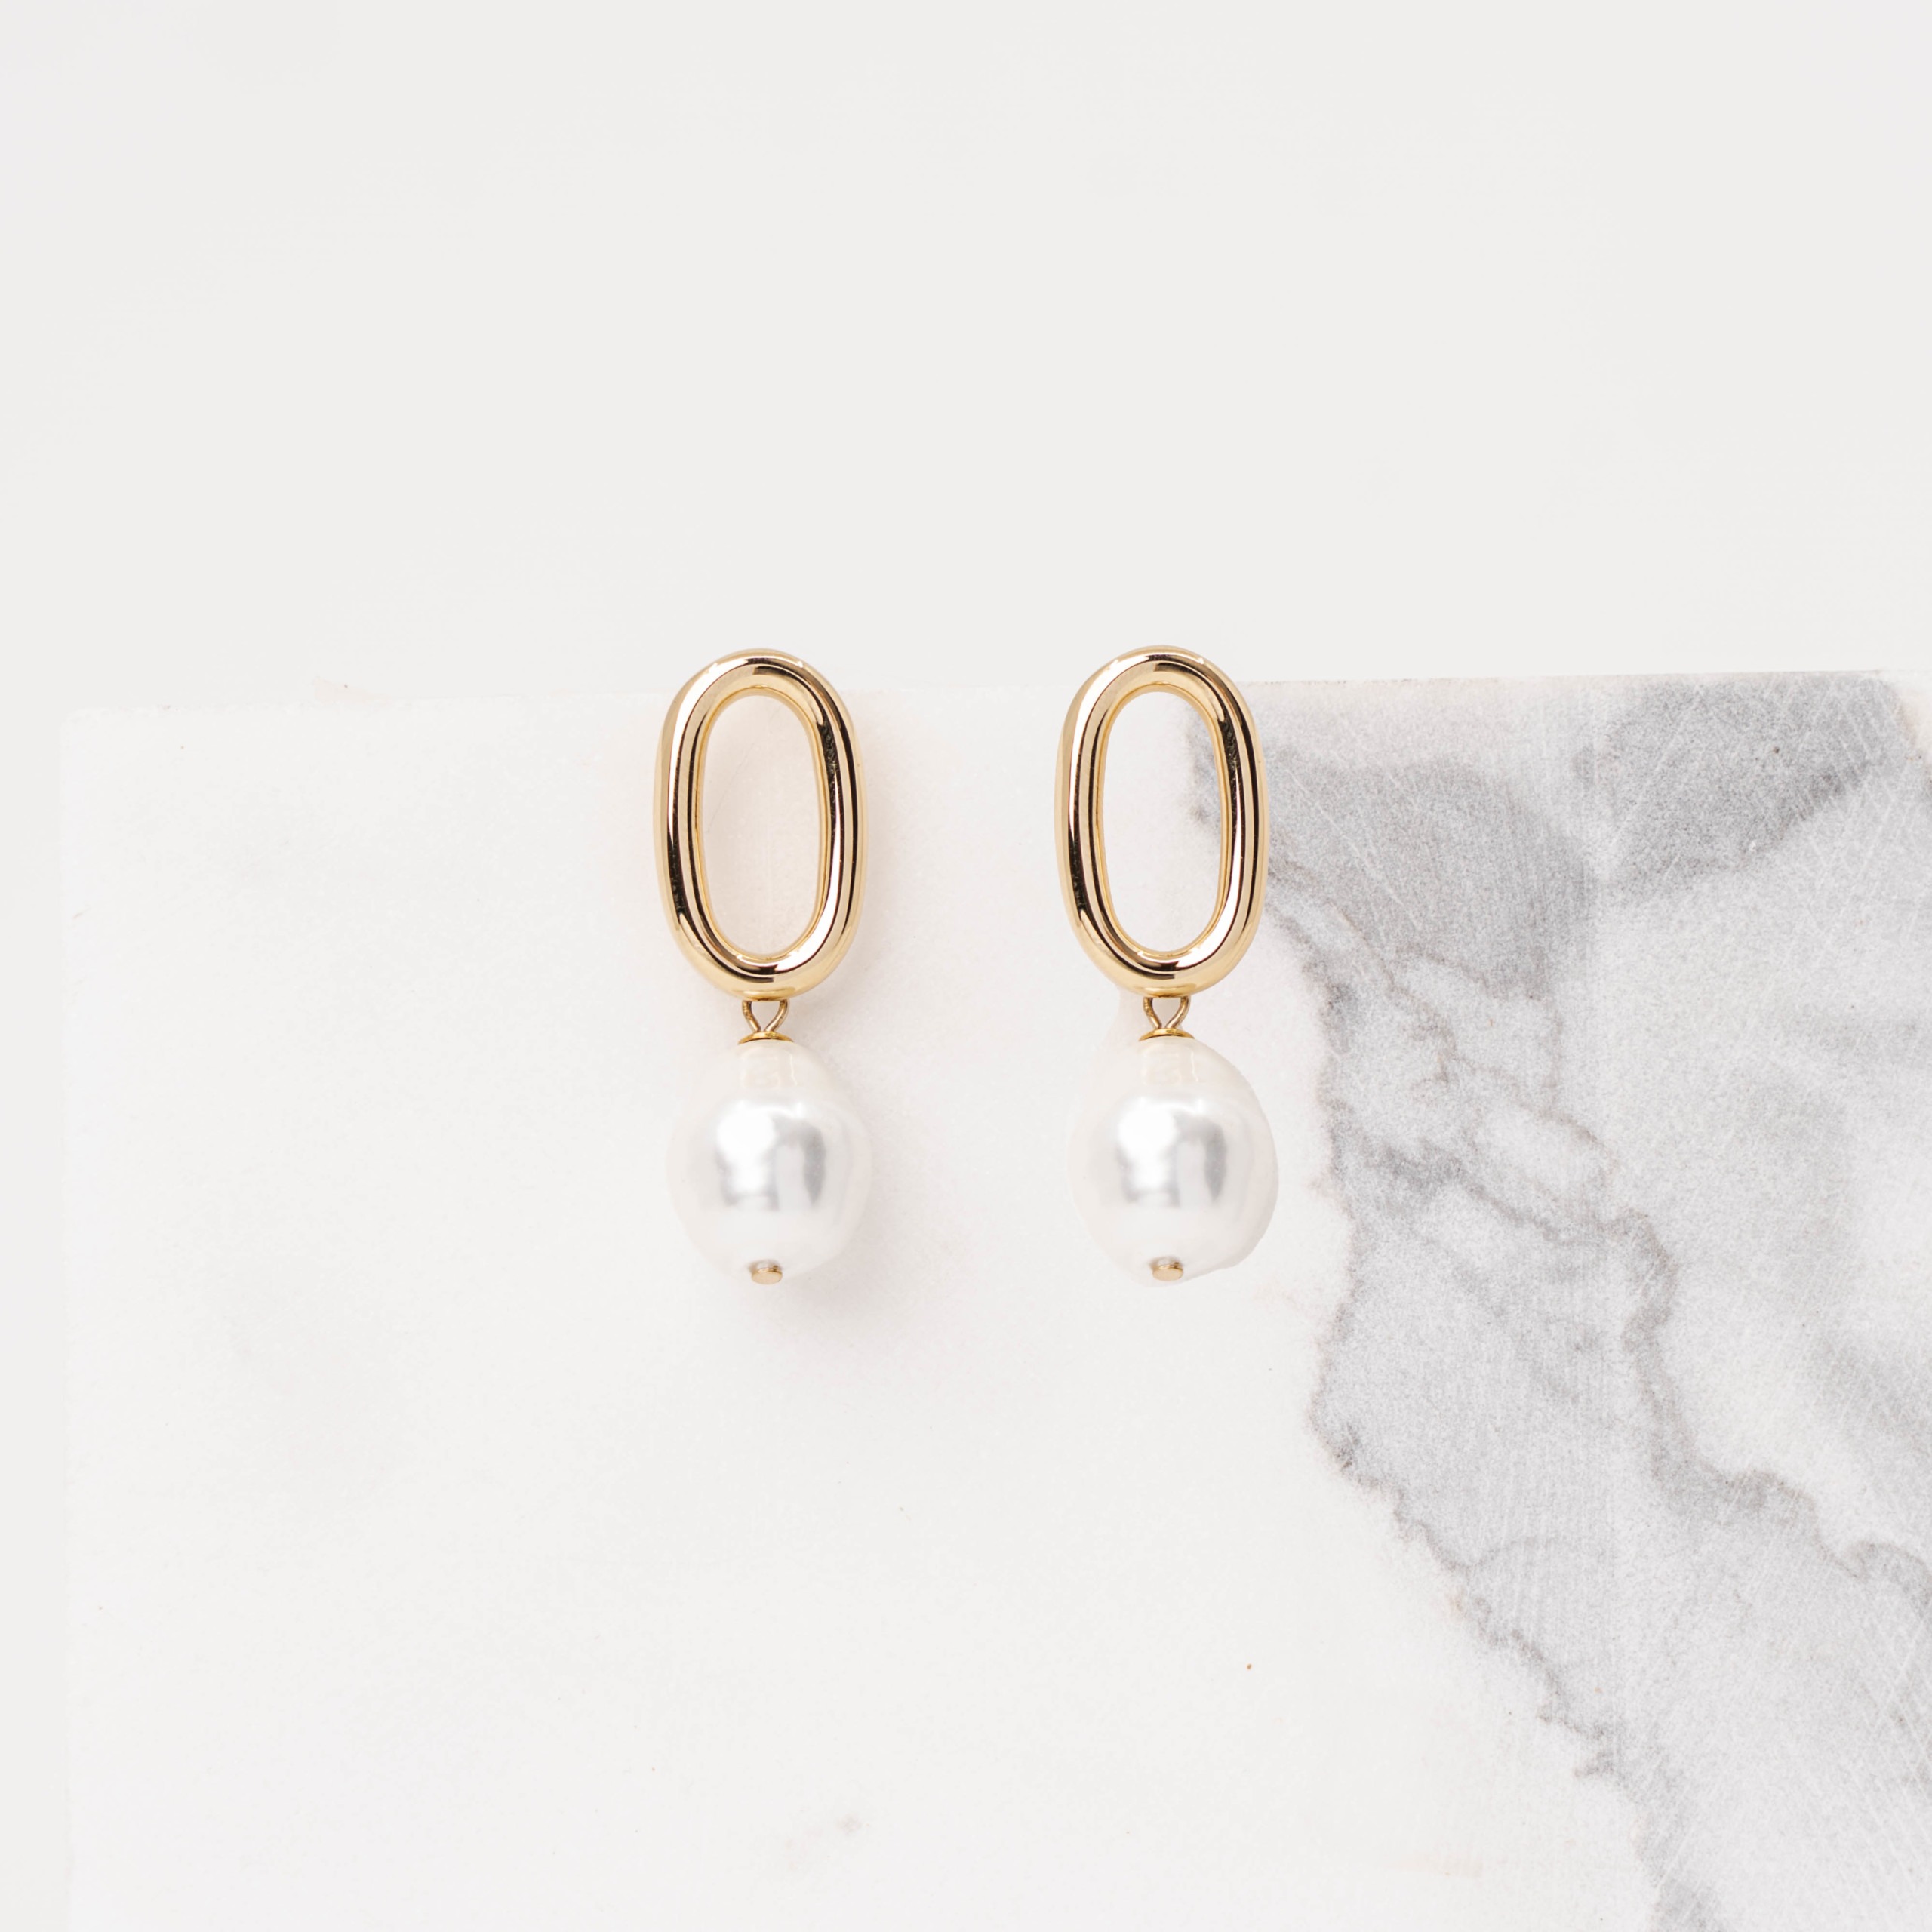 Audrey pearl earrings